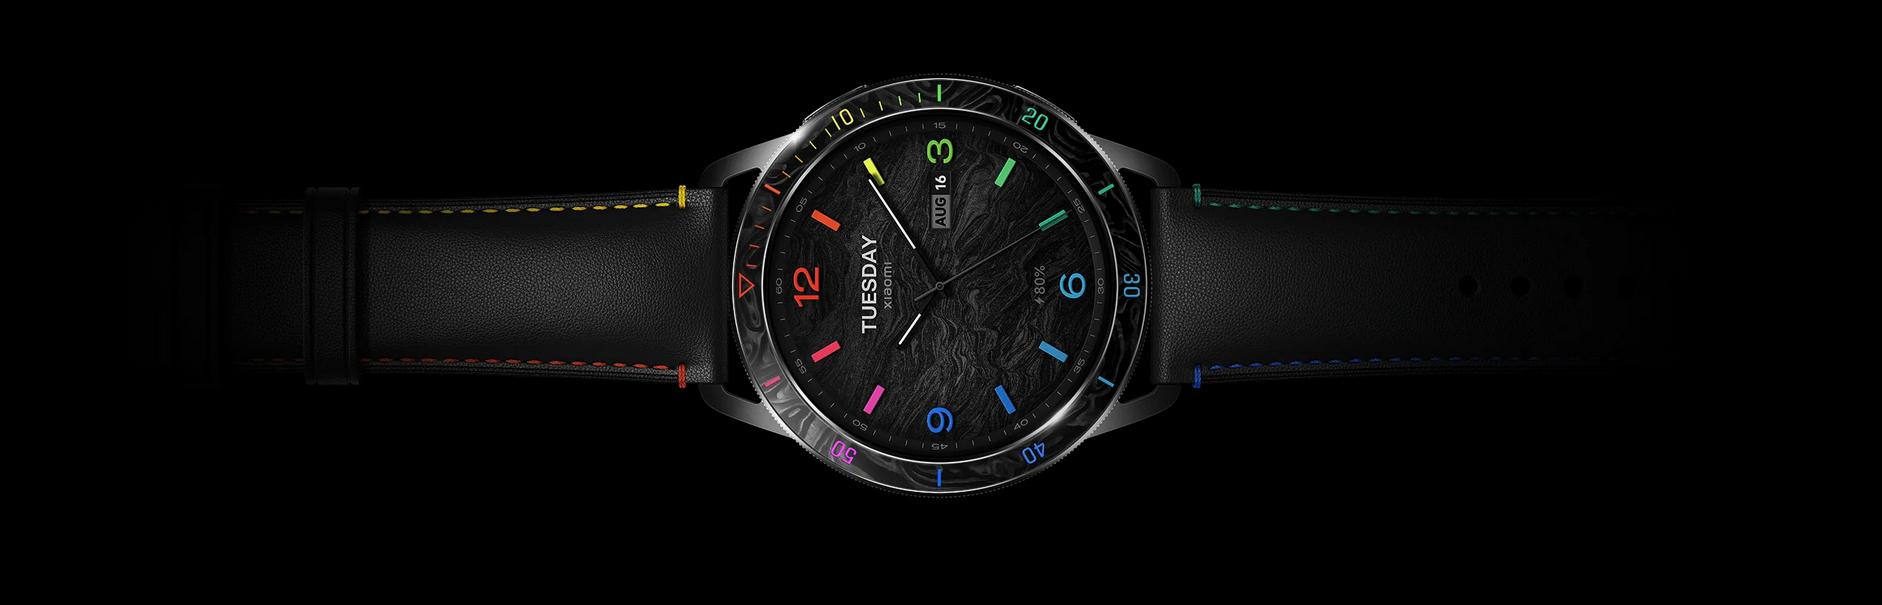 Smartwatch Xiaomi Watch S3 - wyświetlacz AMOLED 1,43